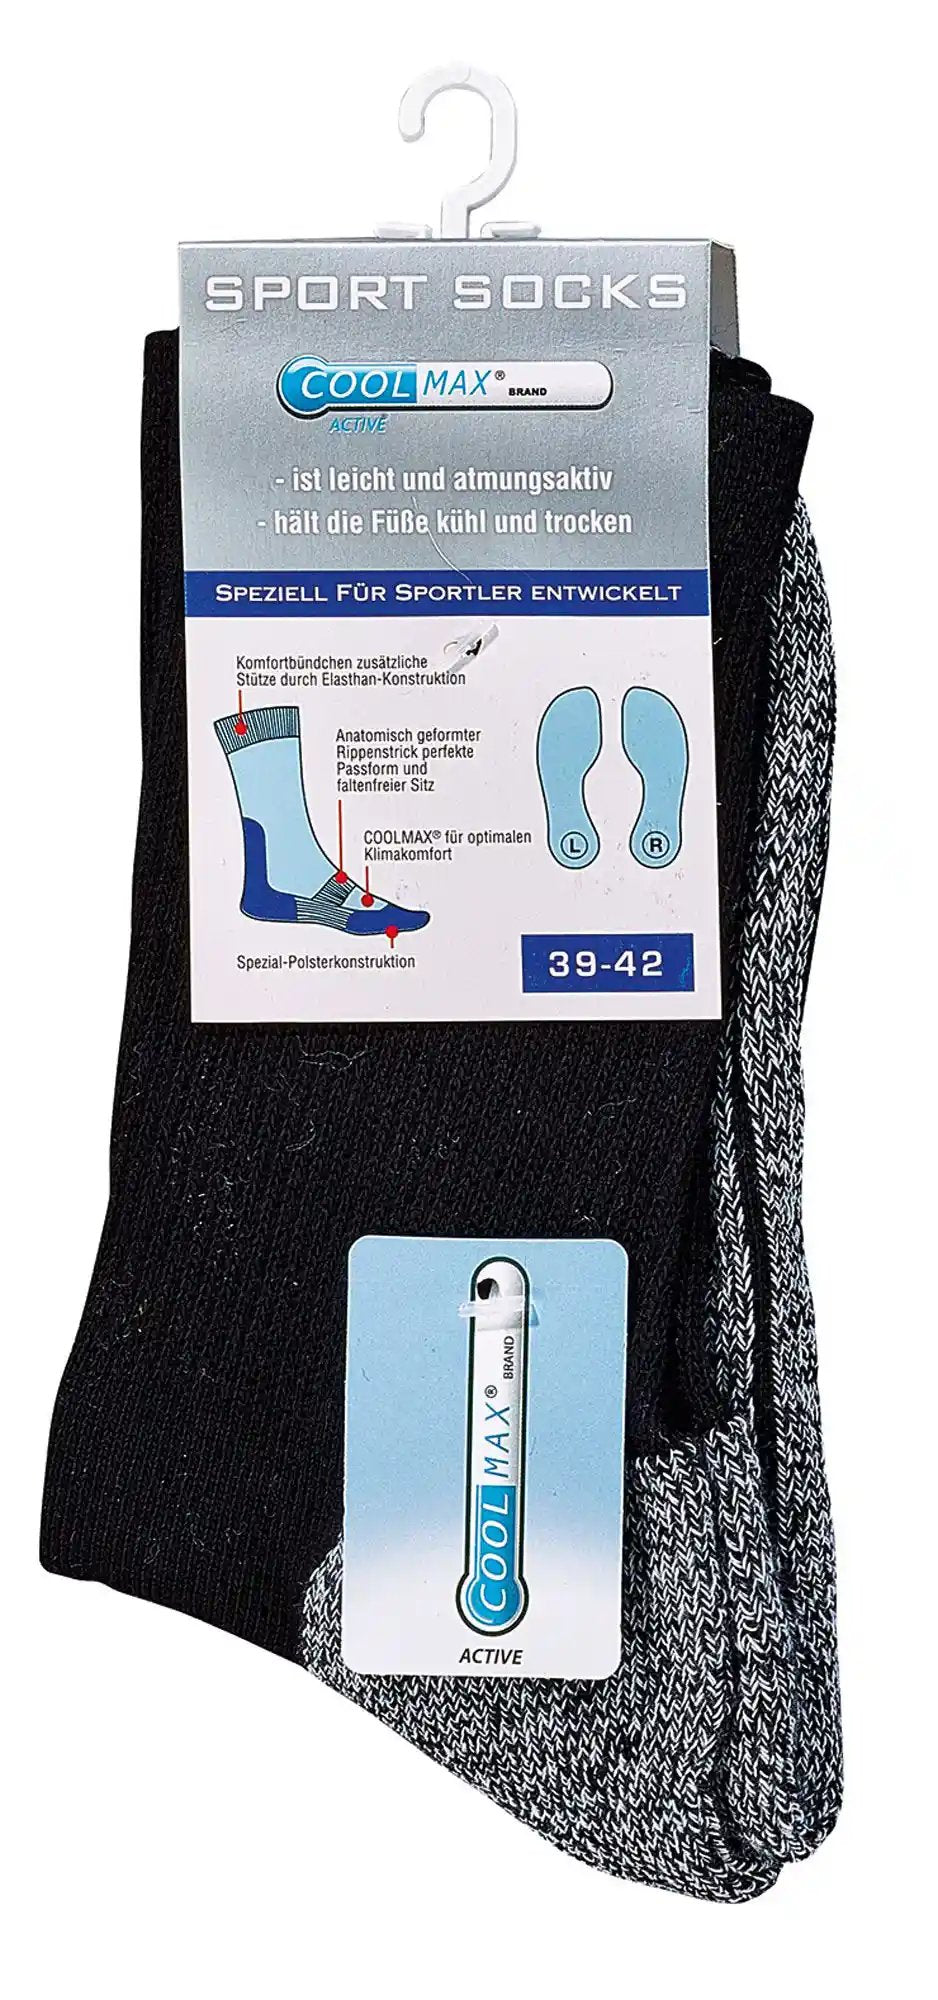 Wandersocken Trekkingsocken Sportsocken Funktionssockenb sind hier im Bündel abgebildet. Die Socken sind so hoch, dass sie das Dein Bein vorm schuh schützen.